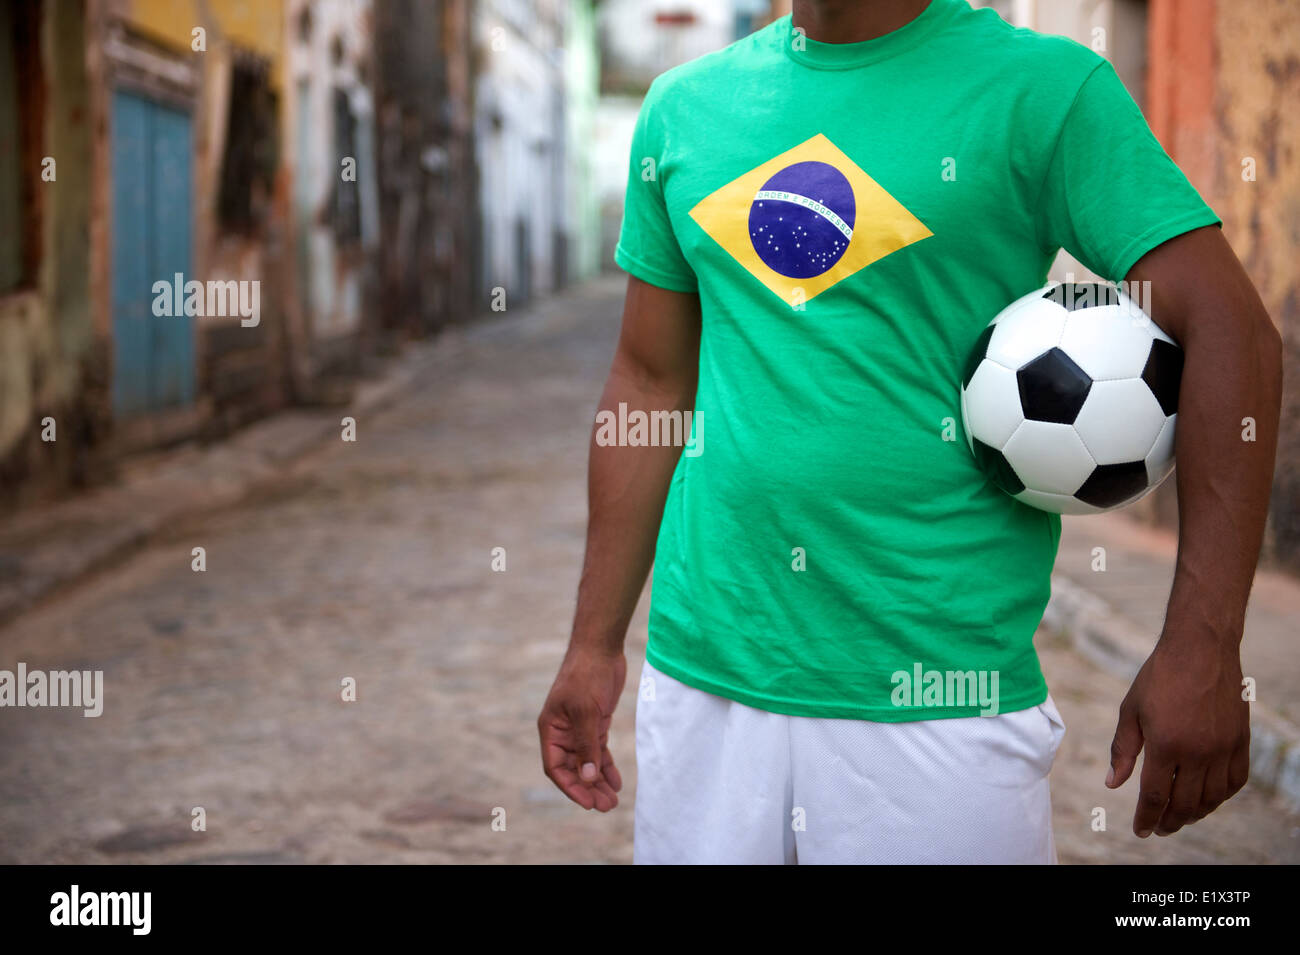 Brasilianische Street-Football-Spieler stehen in Brasilien Flagge T-shirt Holding Fußball ball in einem alten rustikalen Dorf Stockfoto